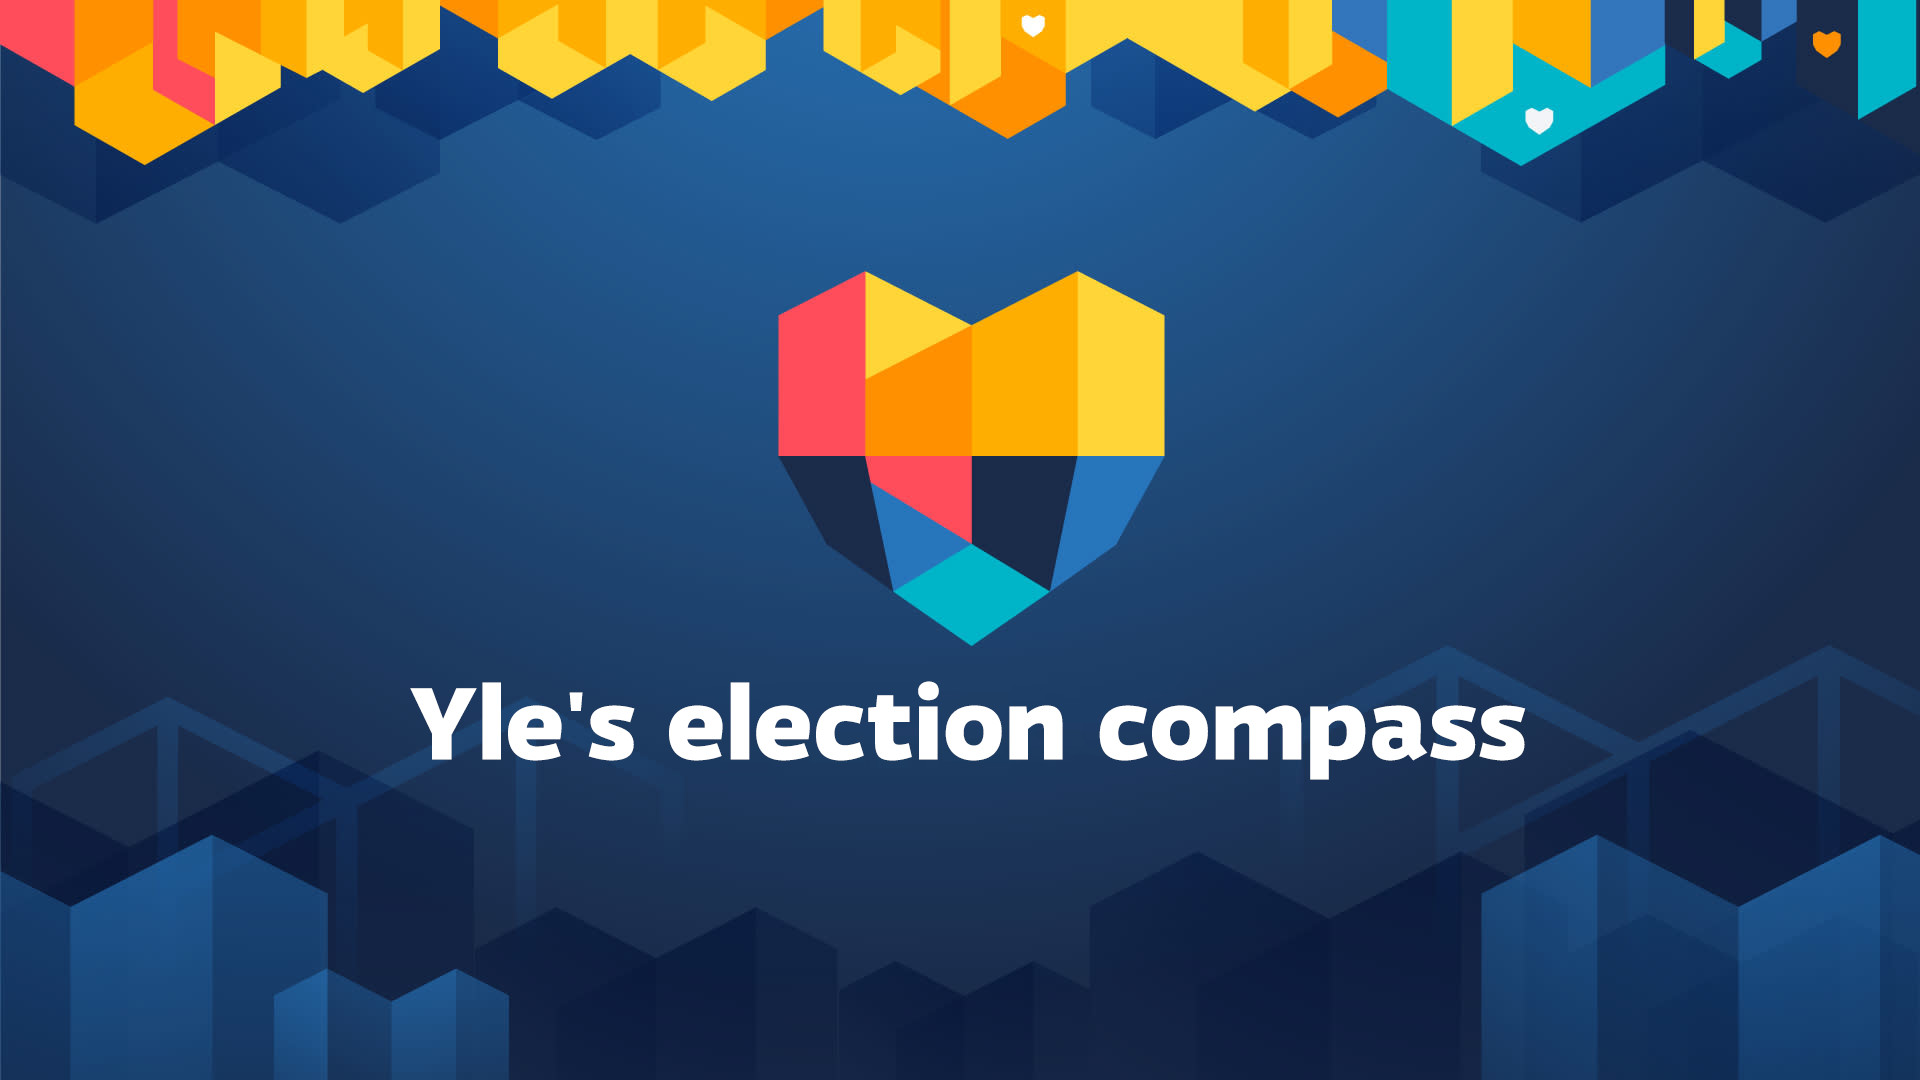 تجد بوصلة Yle الانتخابية الأحزاب والمرشحين الذين يشاركونك وجهات نظرك